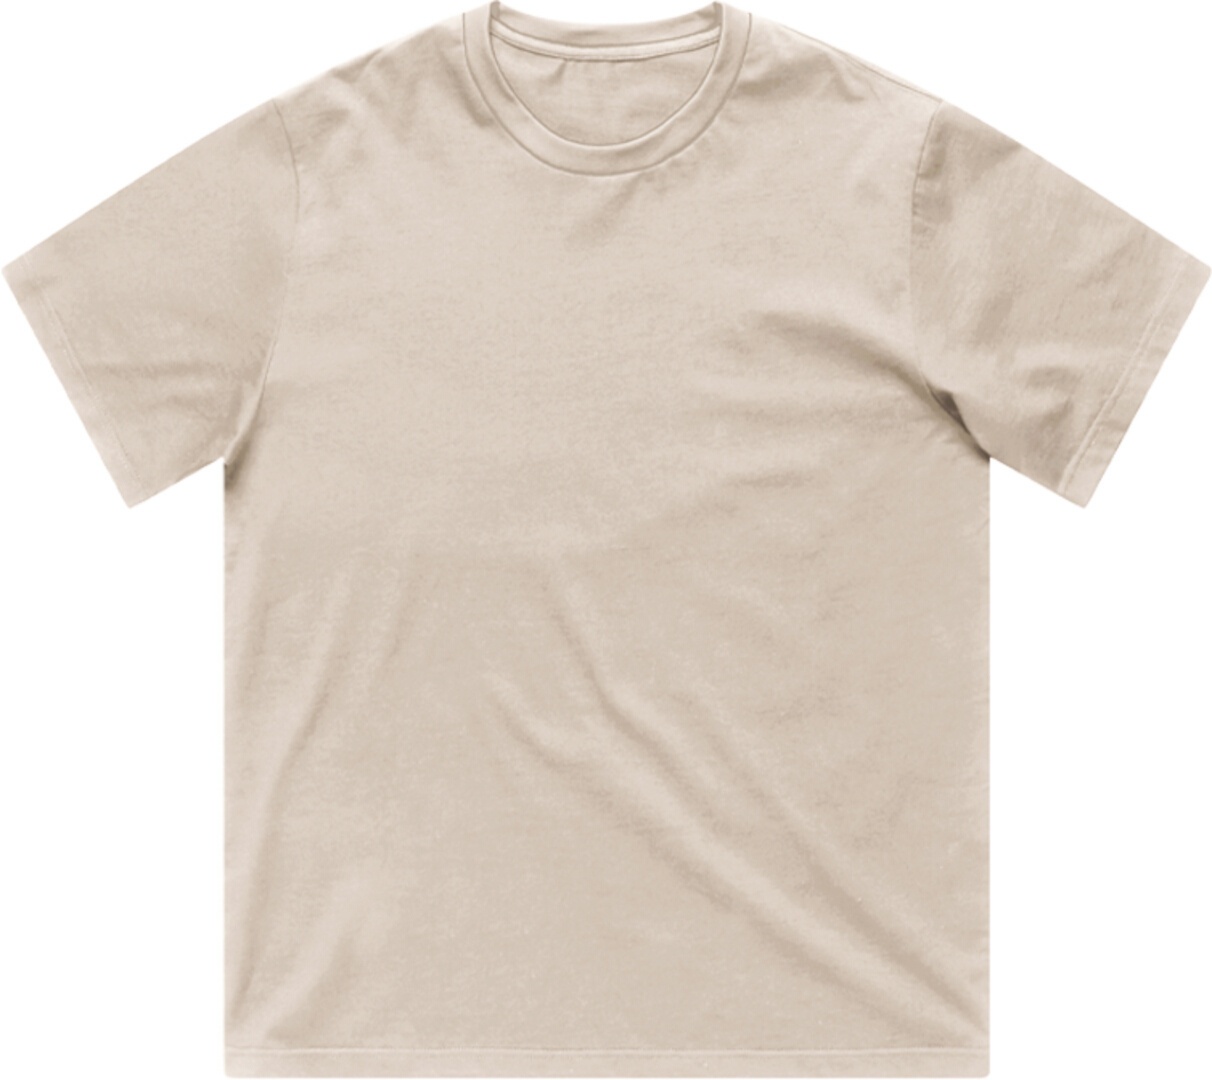 Vintage Industries Devin T-shirt, beige, 3XL